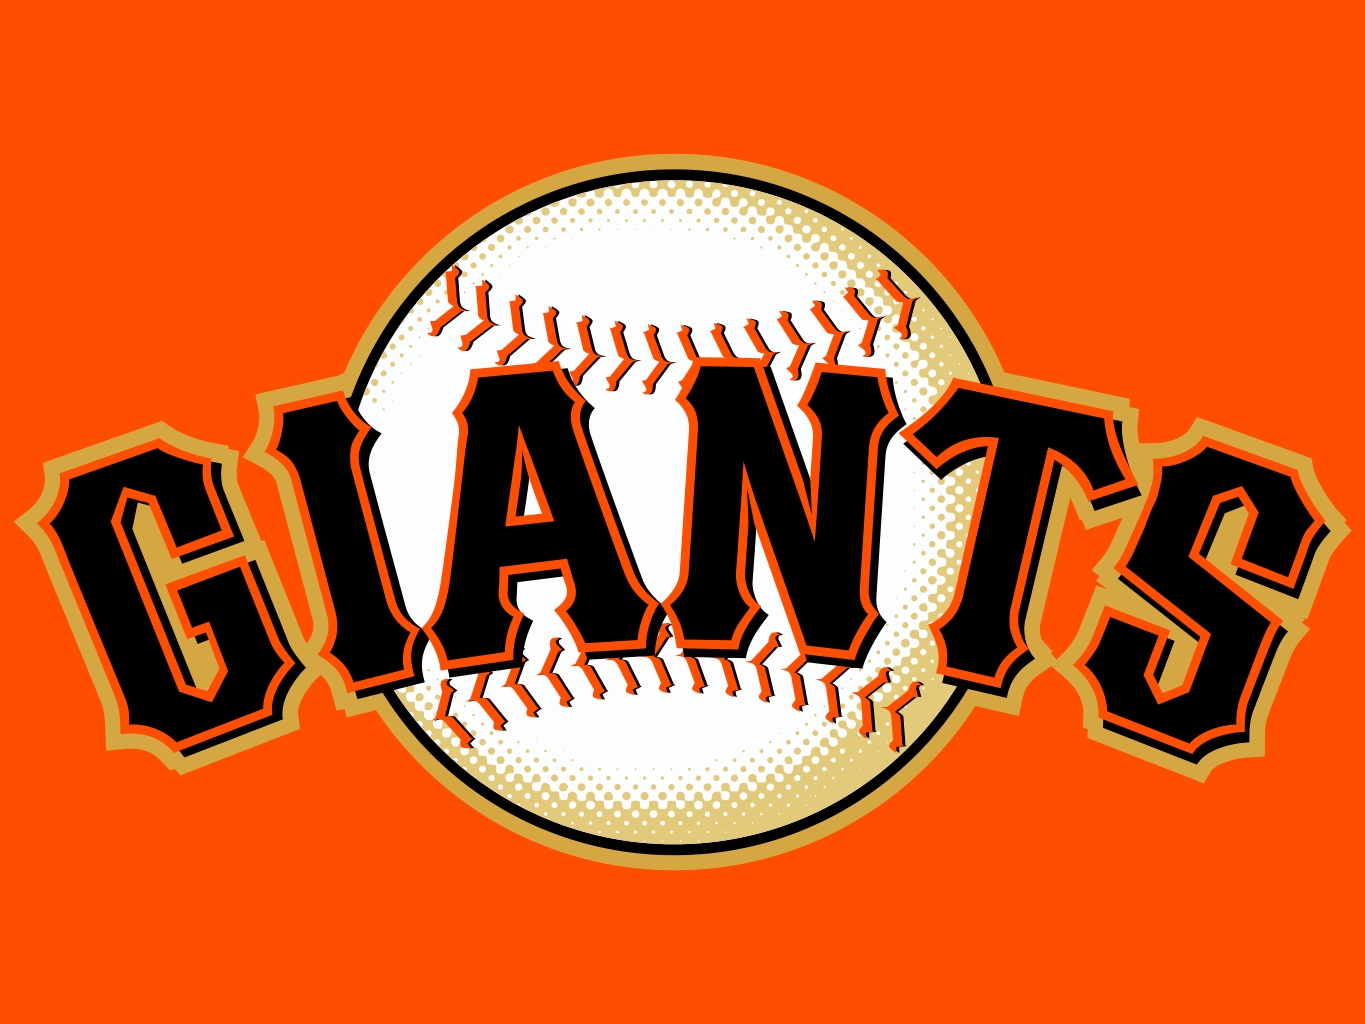 San Francisco Giants, Pro Sports Teams Wiki